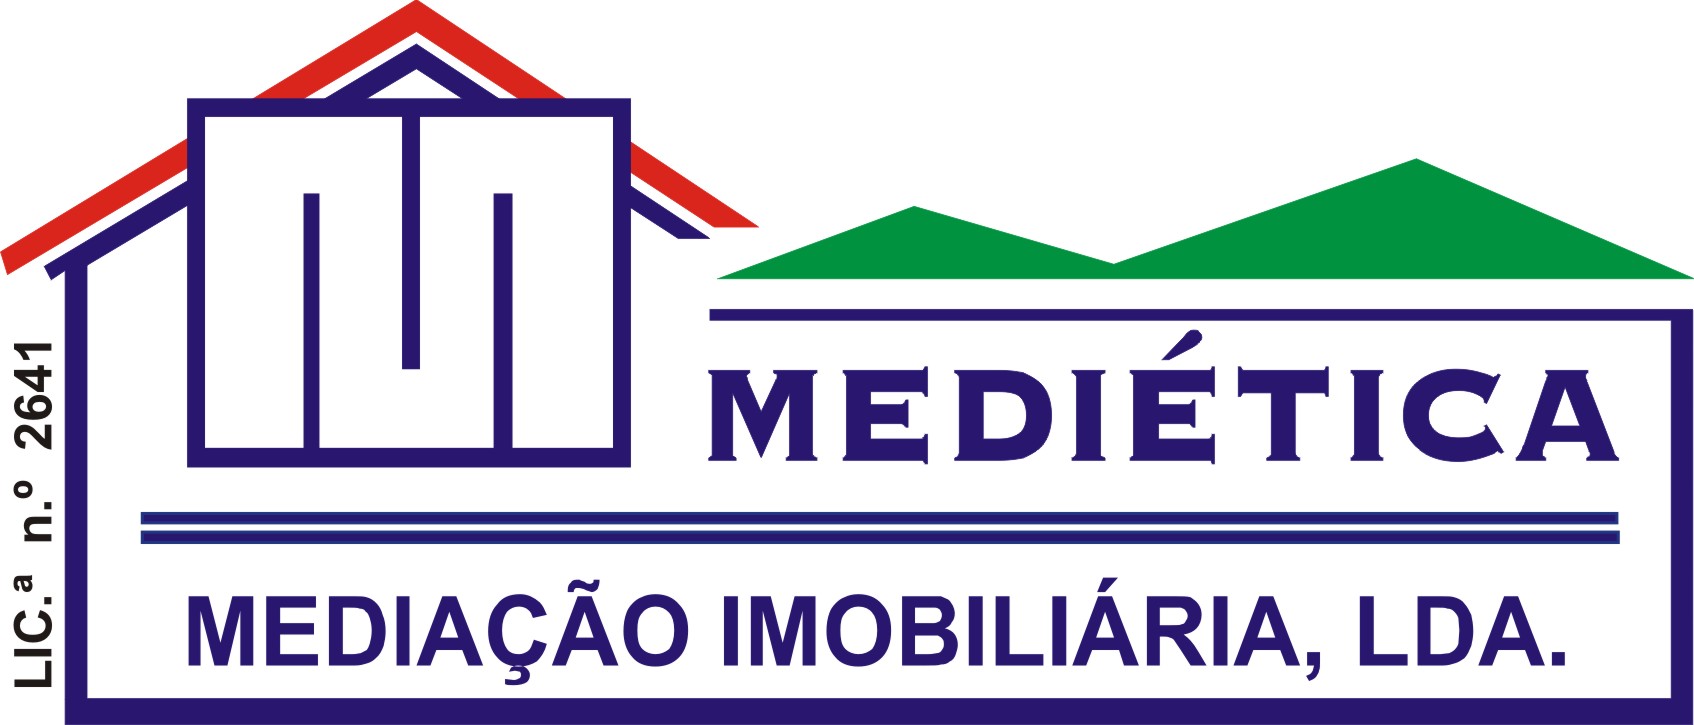 MEDIÉTICA - Mediação Imobiliária, Lda.